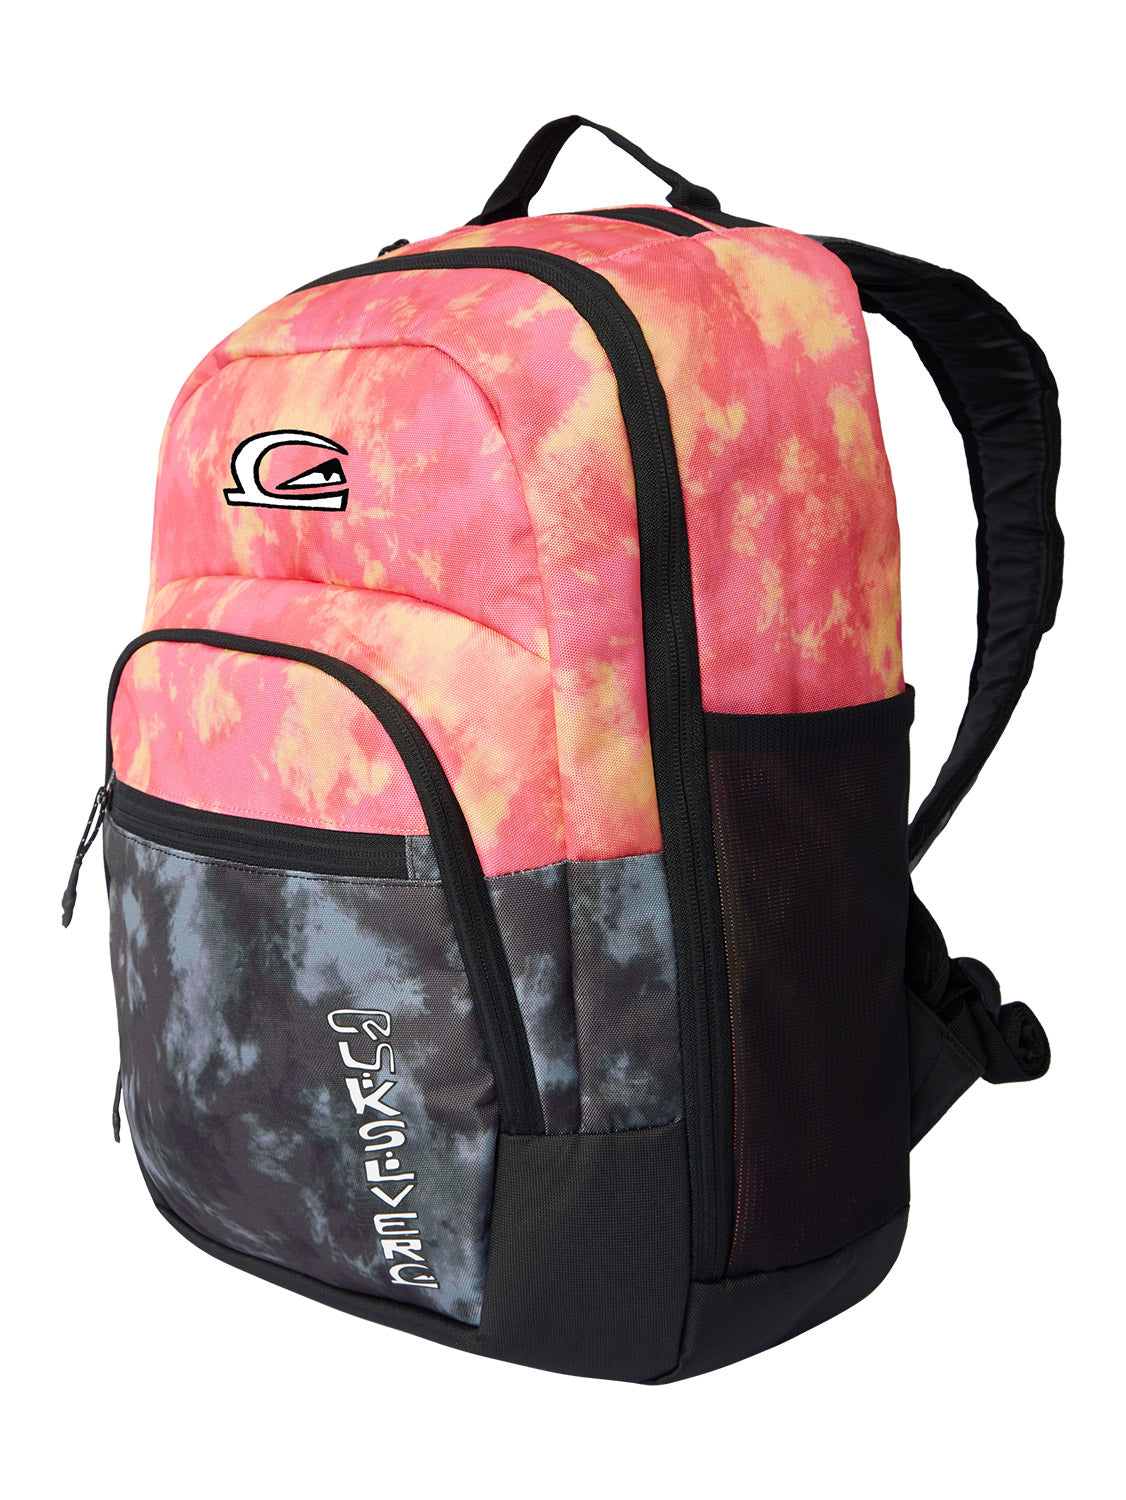 Quiksilver Schoolie Cooler 25L Backpack